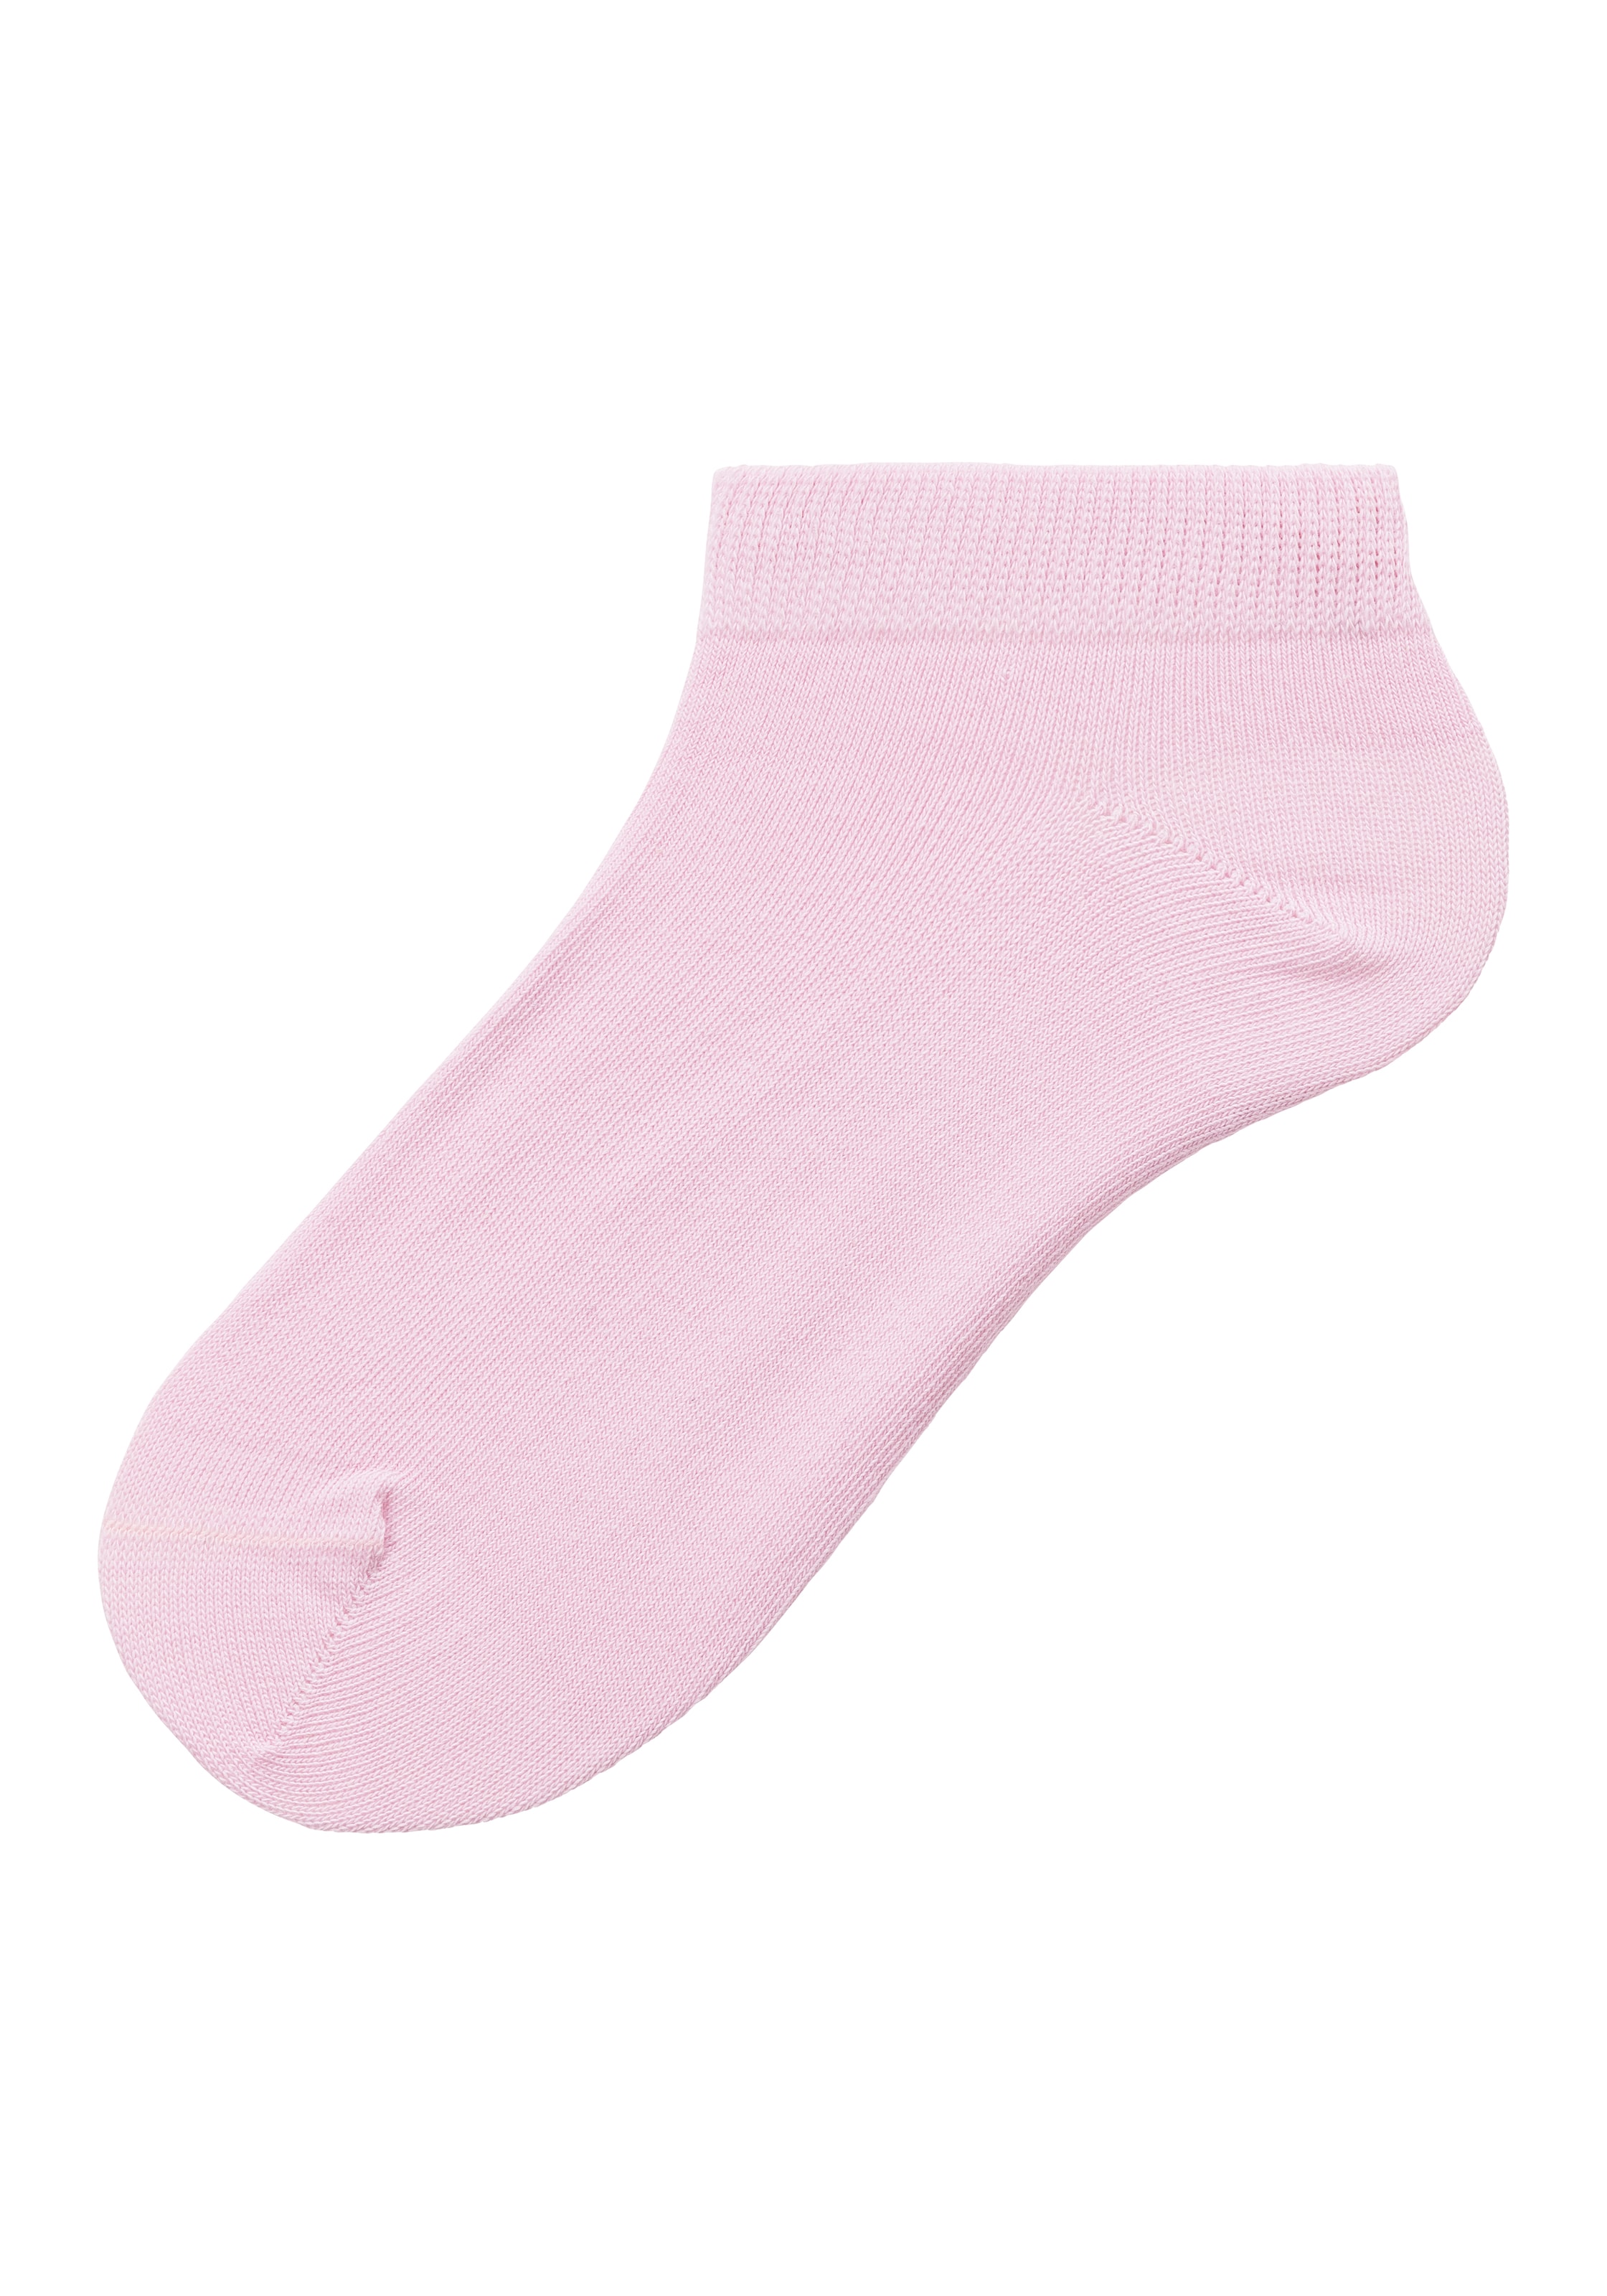 Kinder Teens (Gr. 140-176) BENCH Socken und Tasche in Navy, Grau, Pink - DV06200